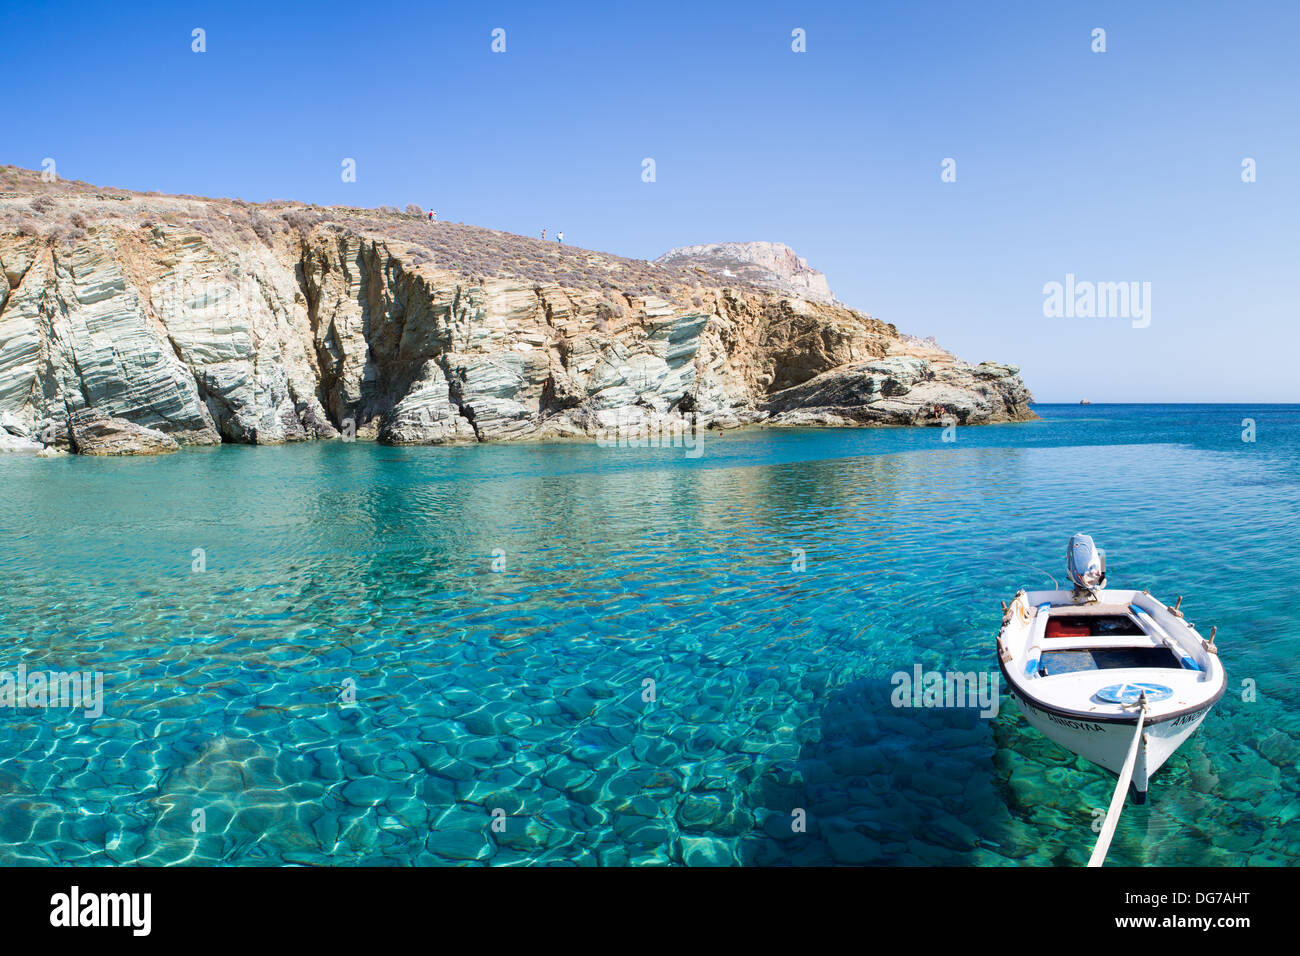 Petit bateau sur l'eau cristalline de la mer Égée en Grèce Banque D'Images